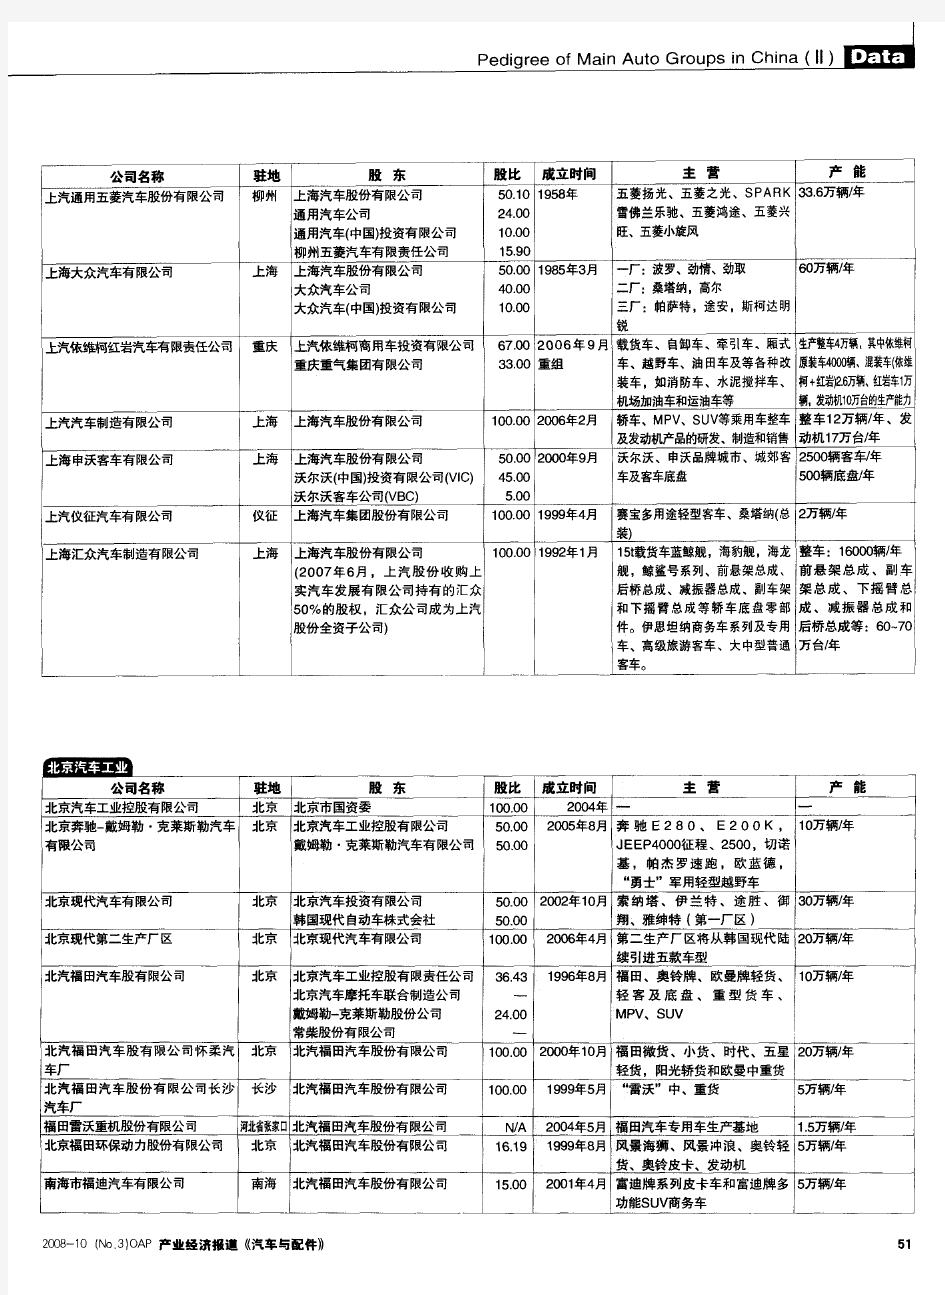 中国主要汽车集团谱系- 资料共享(上汽,北汽,一汽,东风,广汽等)